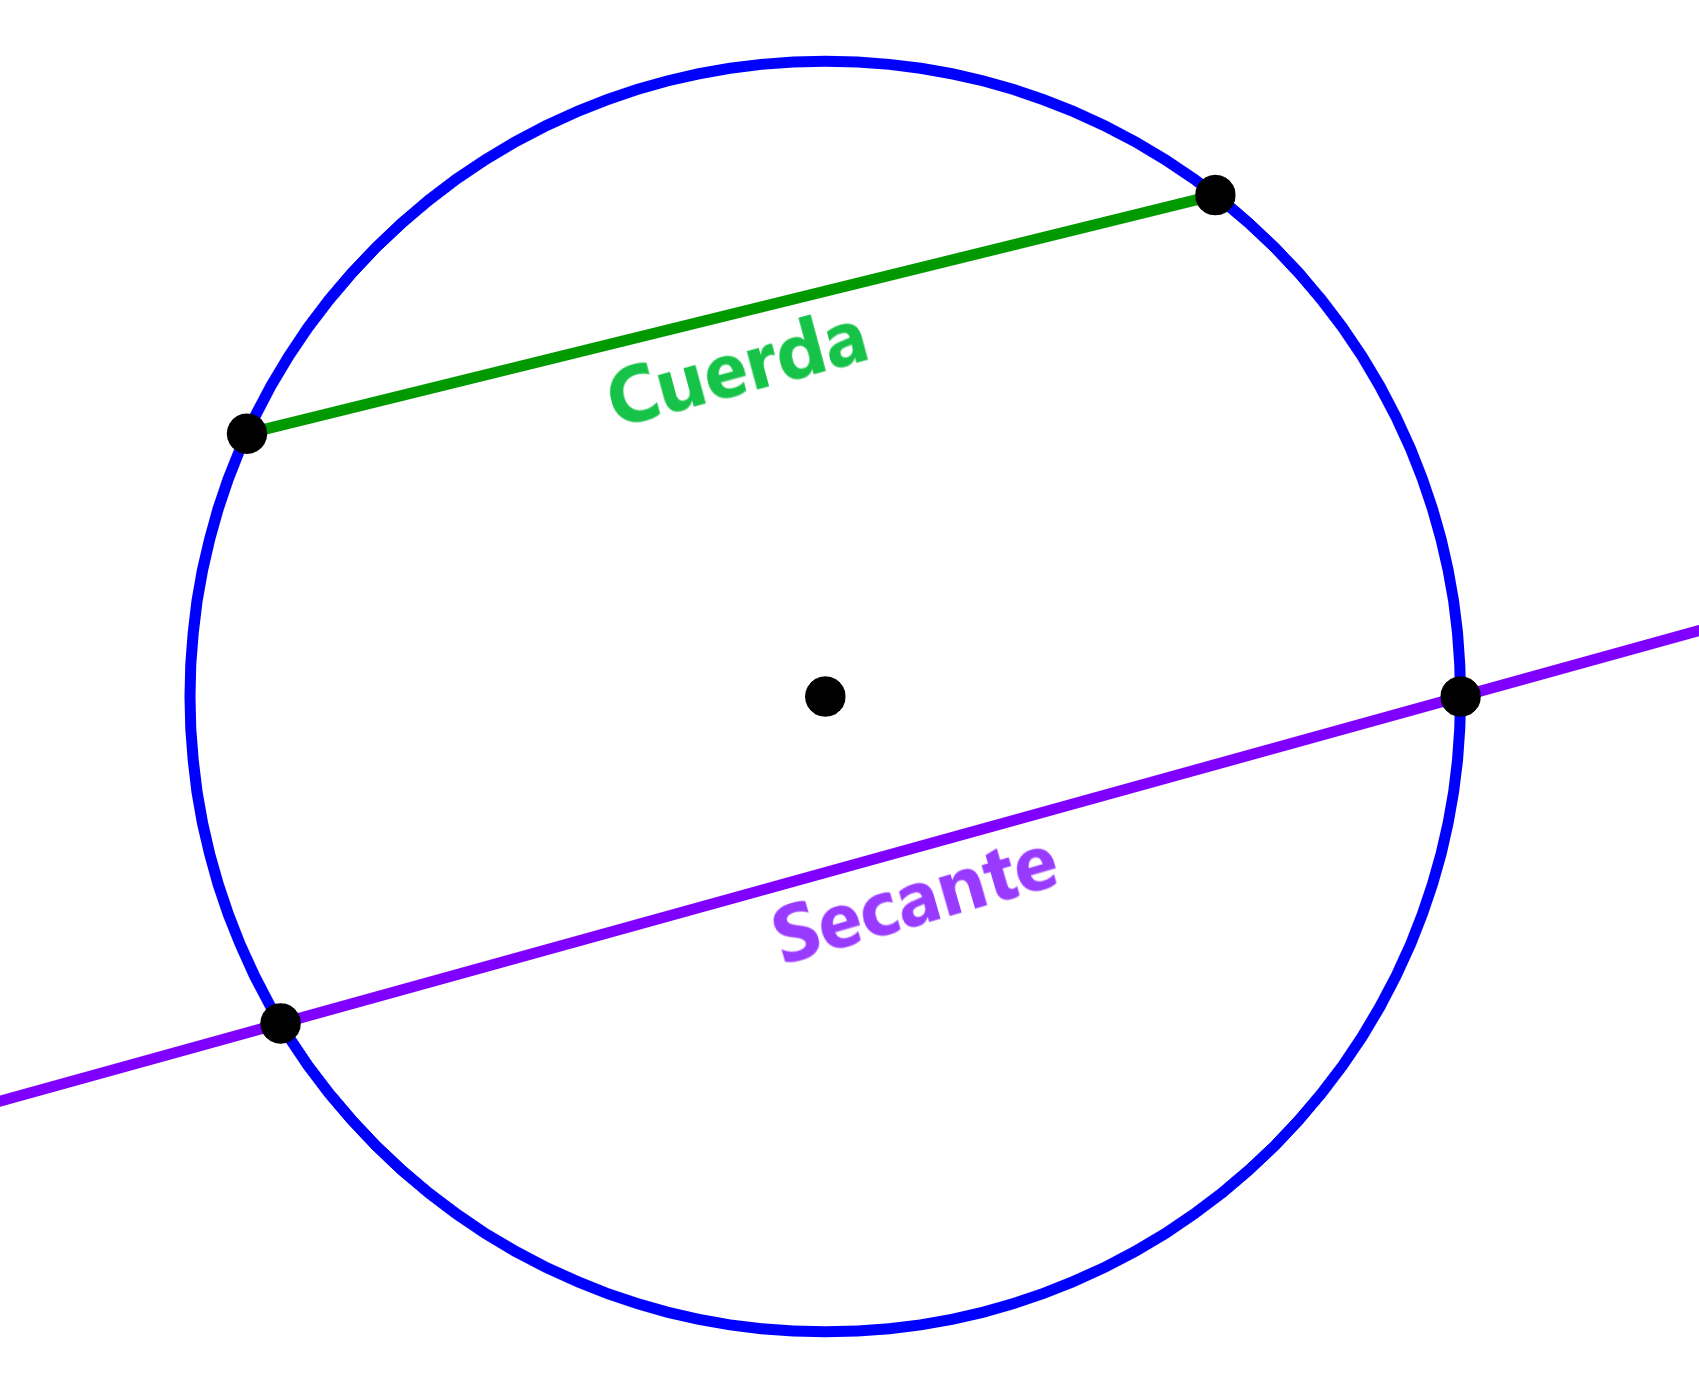 diagrama de cuerda y secante de circunferencia